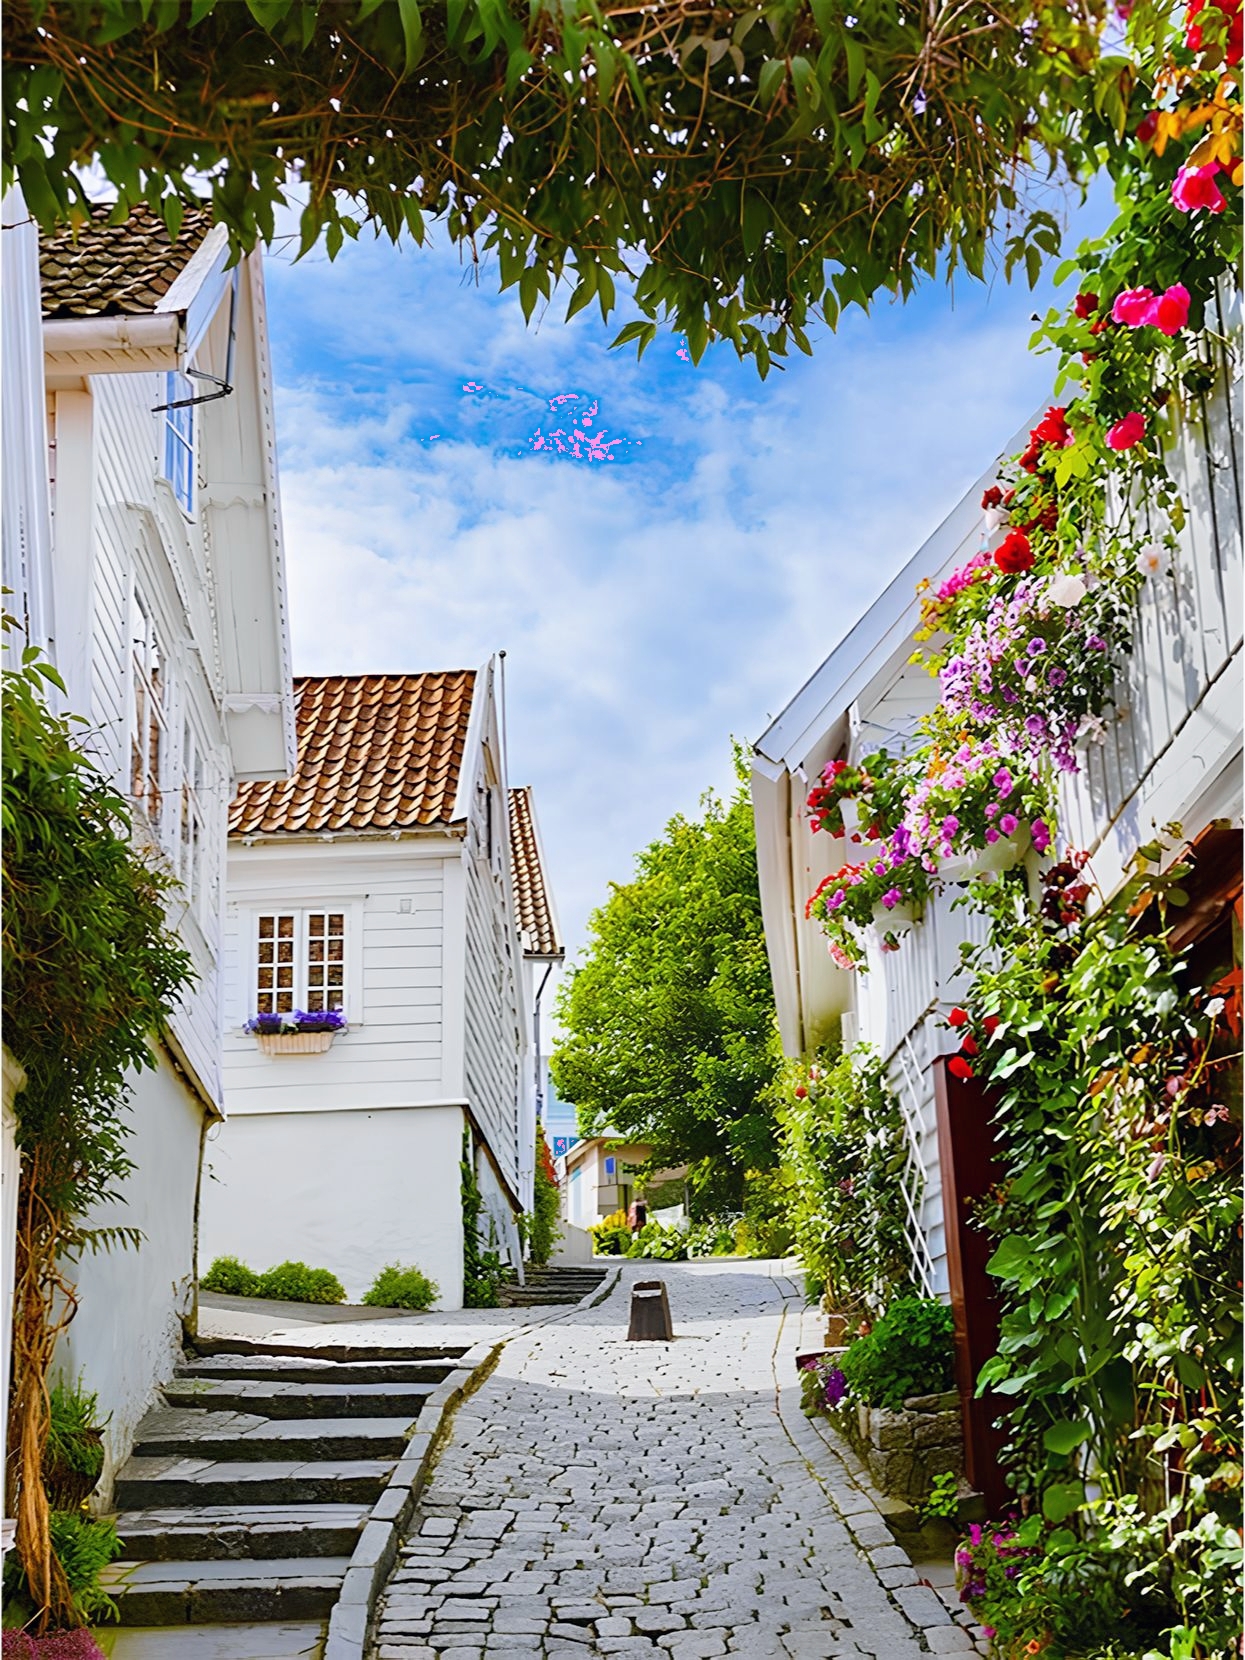 GamleStavanger是挪威斯塔万格市的一个历史悠久的地区，也被称为“老斯塔万格”。这里保存了